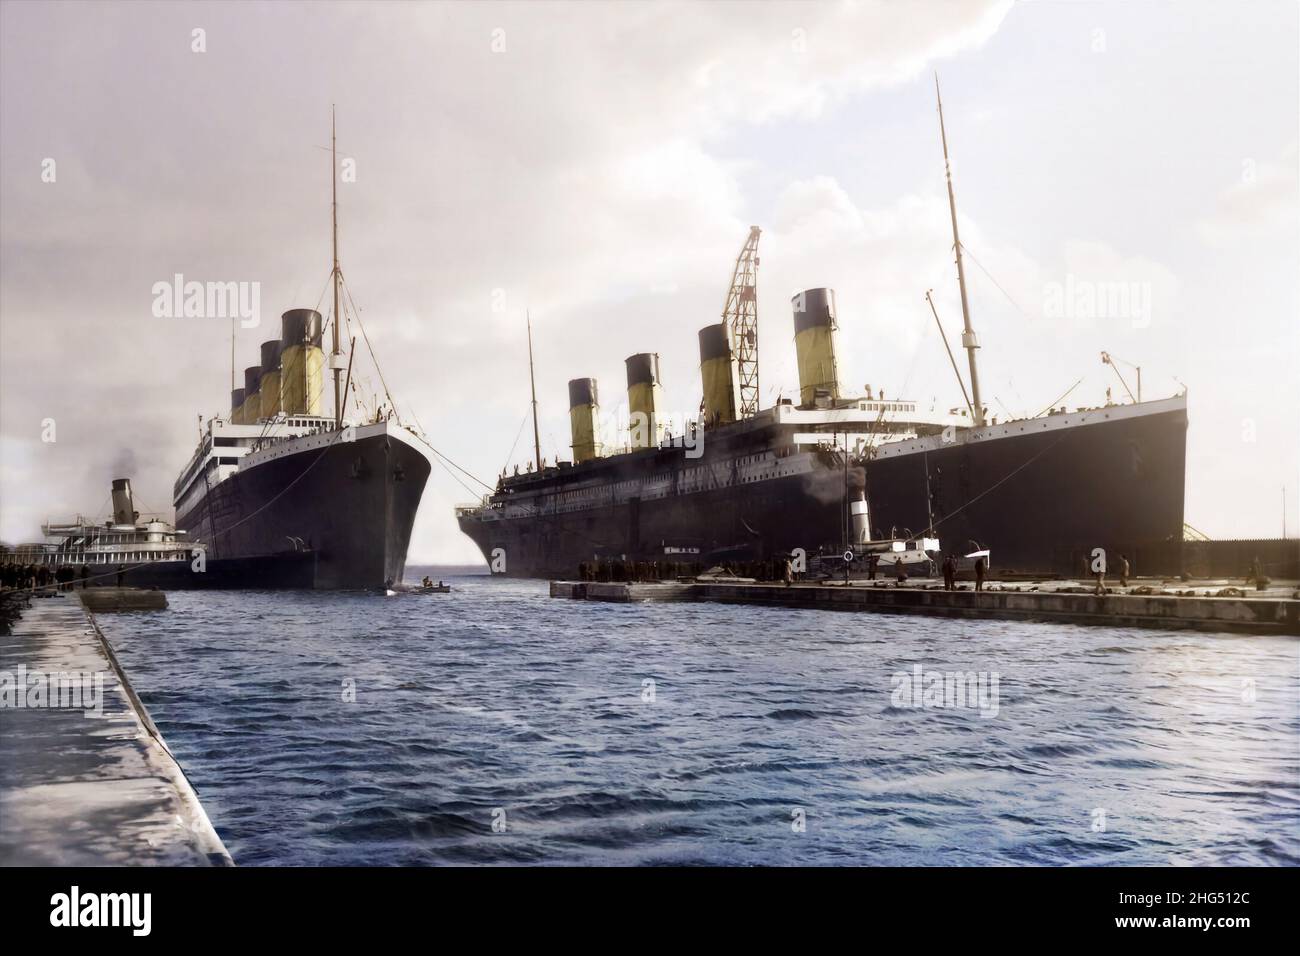 Il RMS Olympic lascia il bacino di carenaggio e torna in servizio dopo le riparazioni. La nave è stata fotografata per l'ultima volta con la nave gemella Titanic. Foto Stock